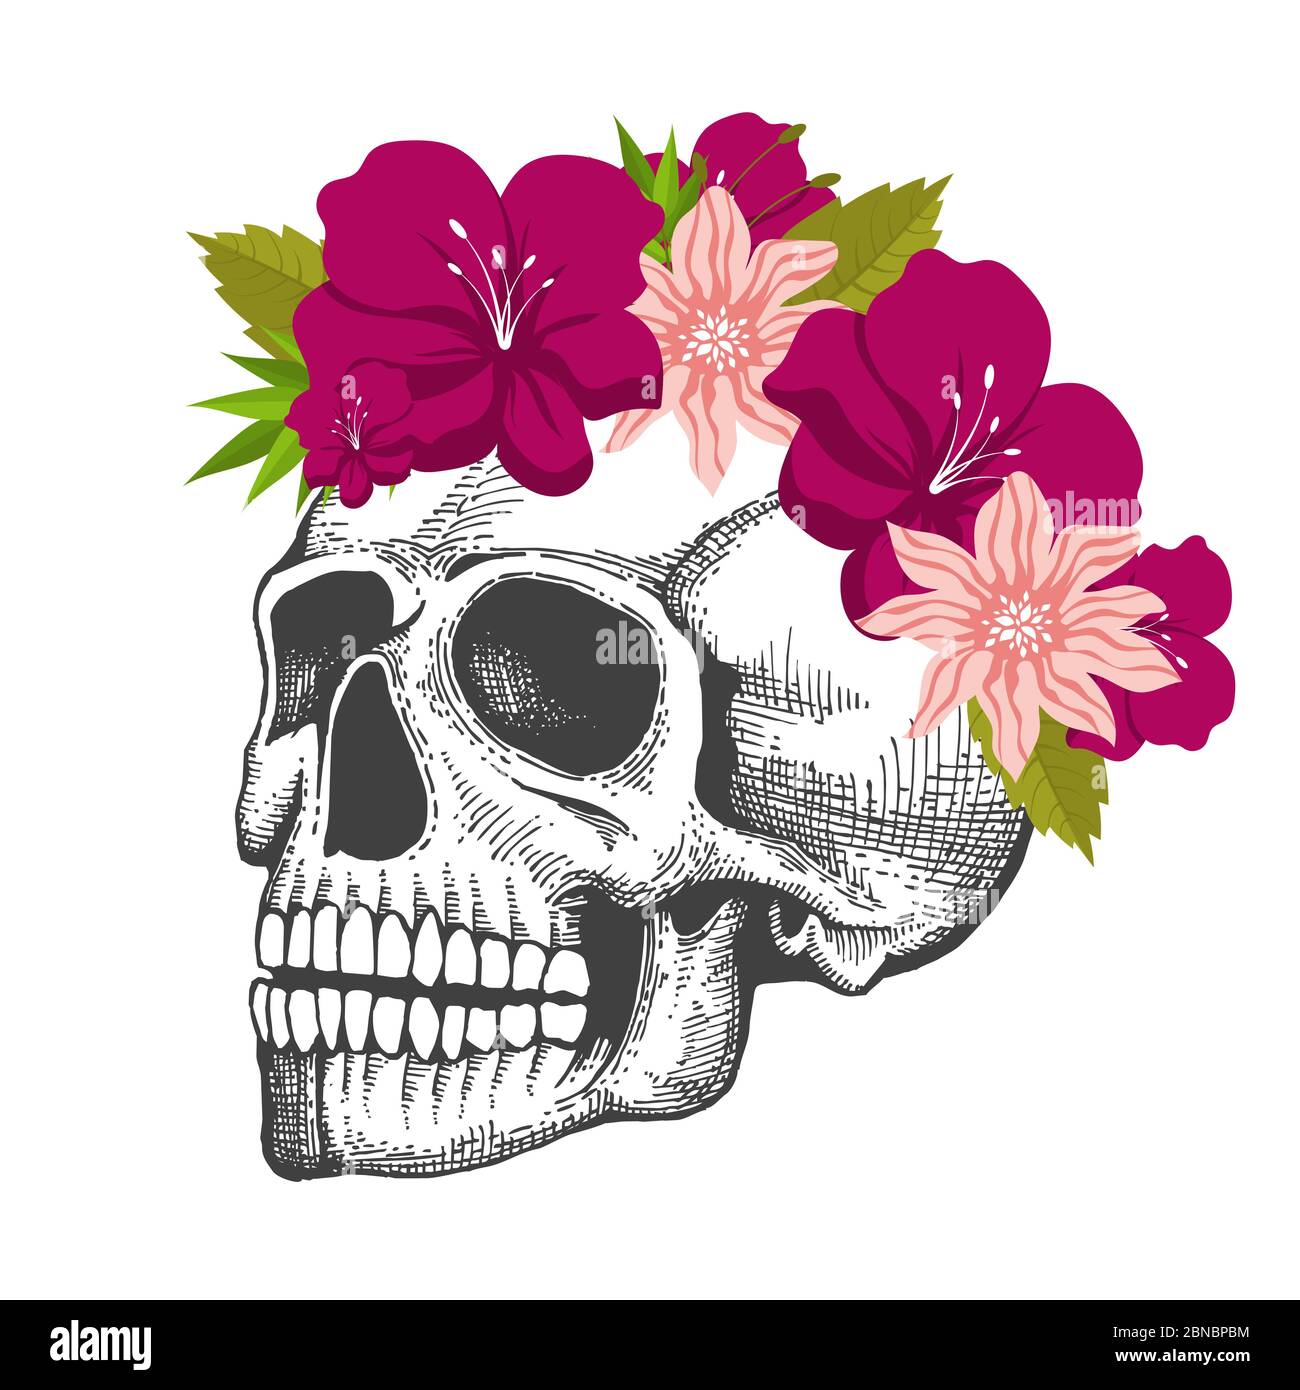 Disegno cranio umano con corona floreale isolata su sfondo bianco isolato su illustrazione bianca Illustrazione Vettoriale